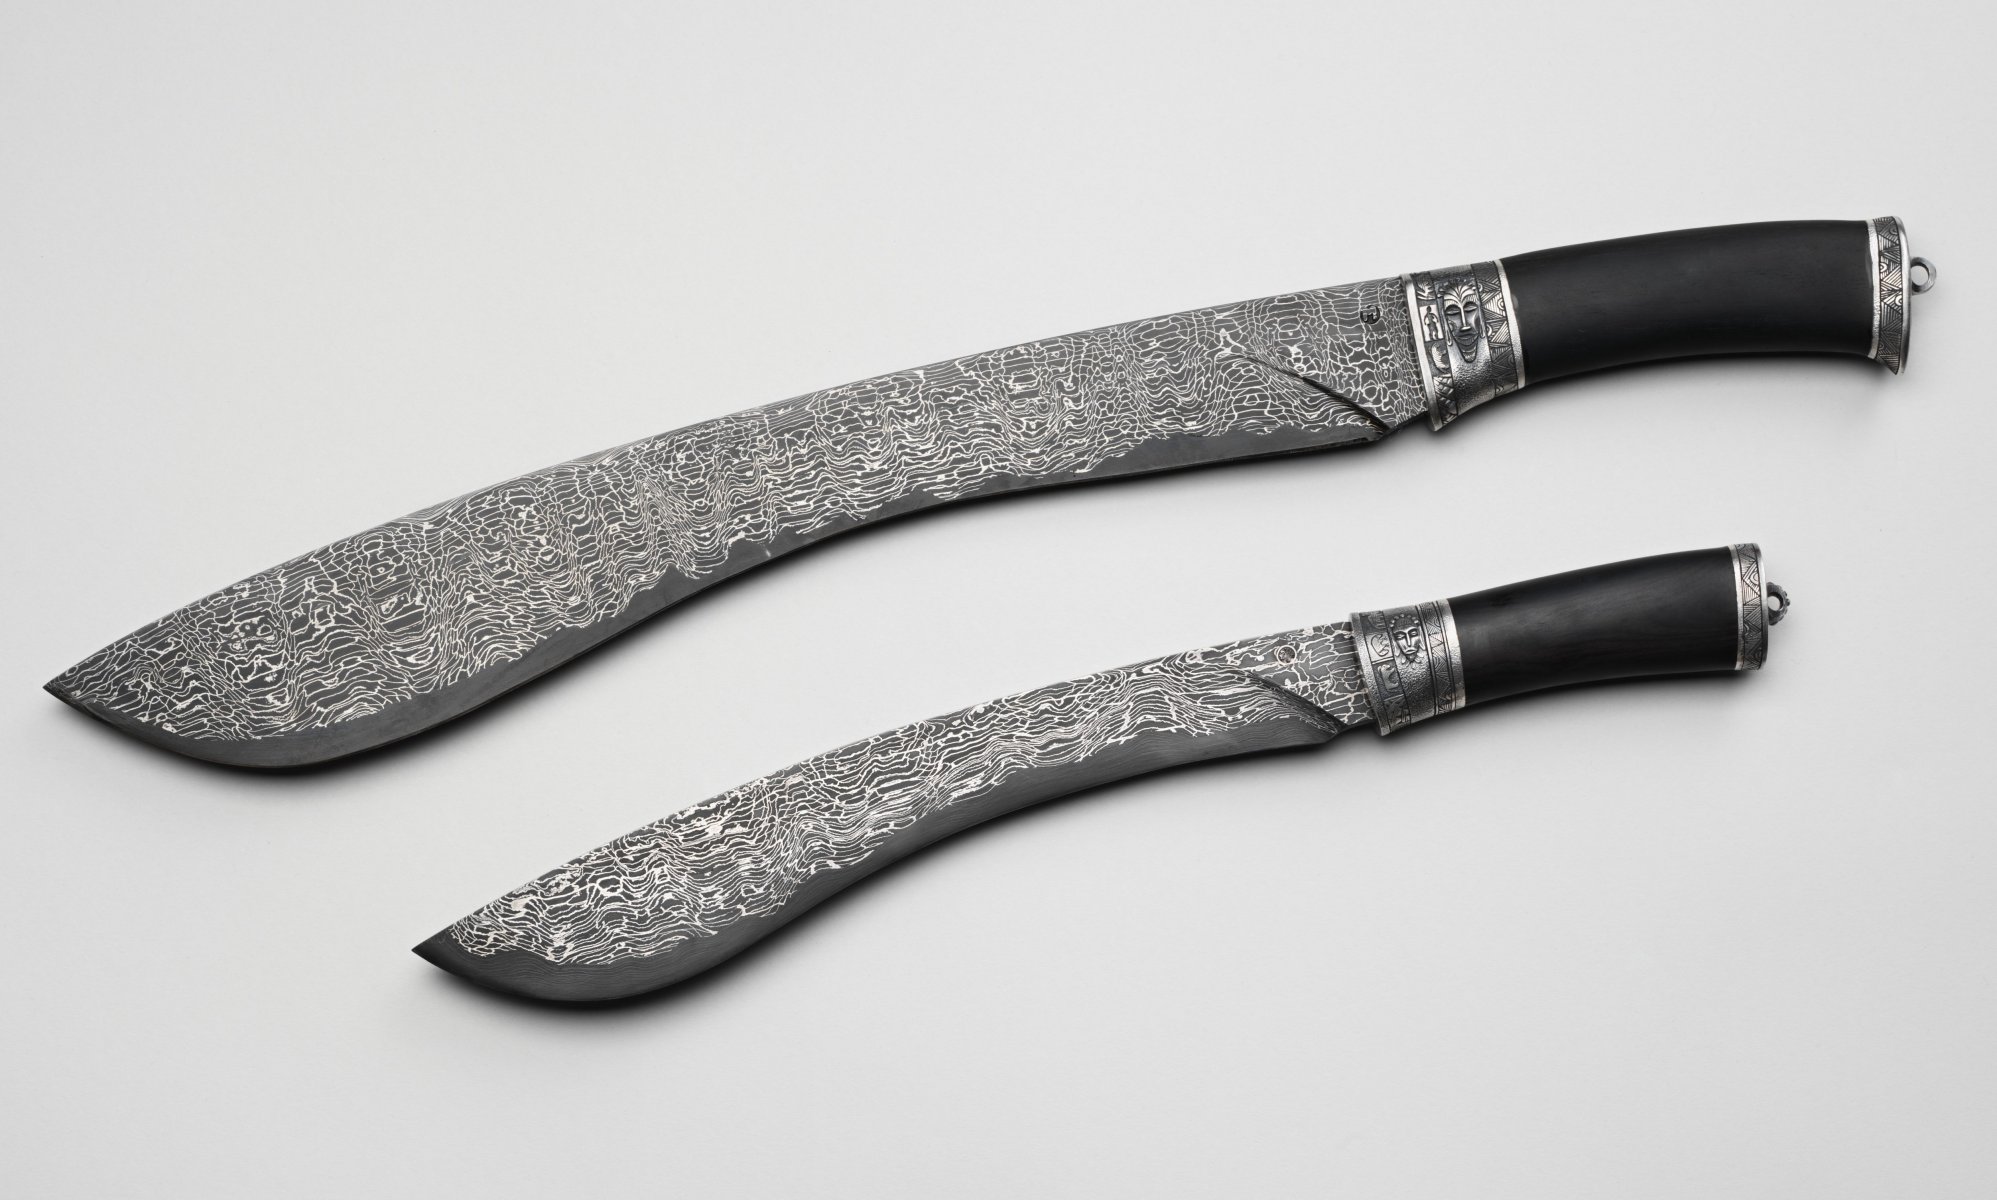 Дамасская сталь: плюсы и минусы, ножи из дамаска их отличия от булатных, заточка и уход